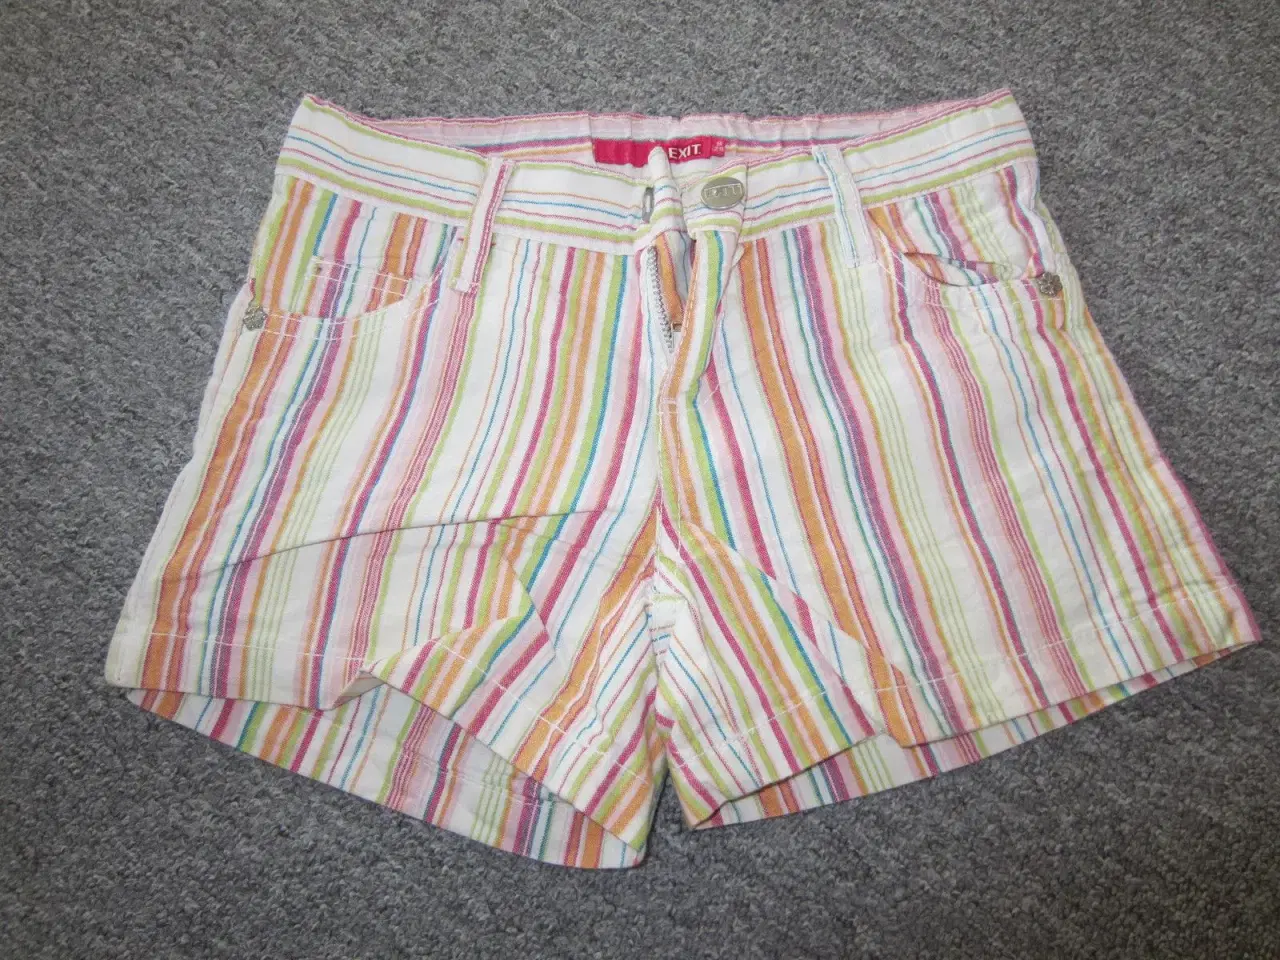 Billede 1 - Smarte shorts fra Exit pige str. 128